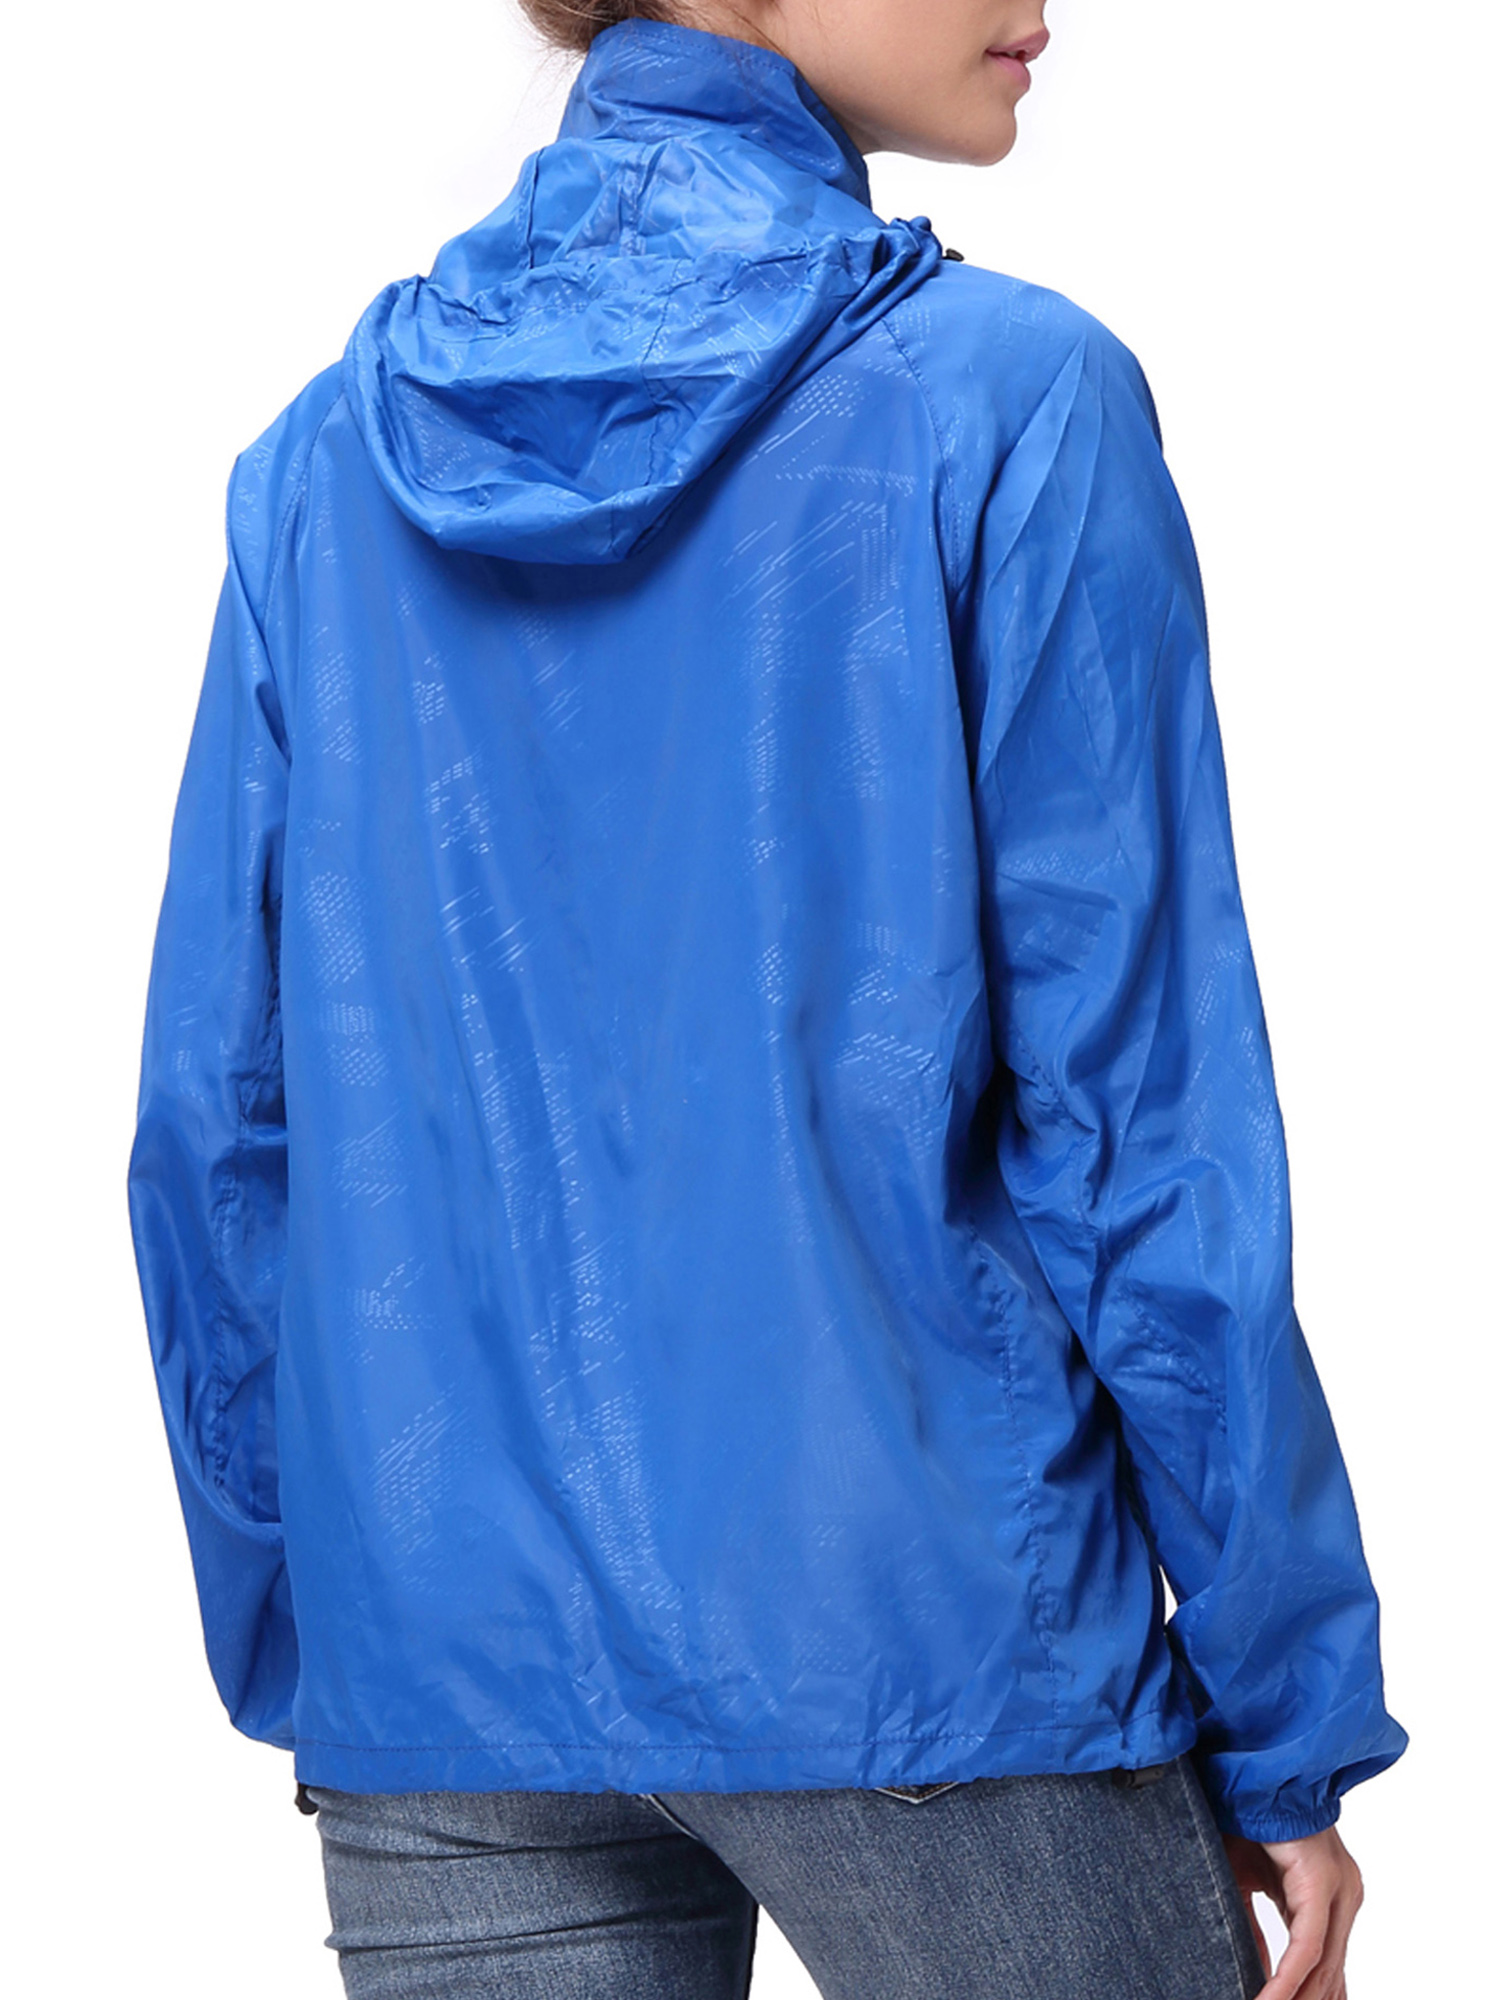 Fashion Womens/Mens Outdoor Lightweight windbreaker Jackets Waterproof Rain Coat Outwear Zip-Up Long Sleeve Hoodie Sport Windbreaker - image 3 of 9